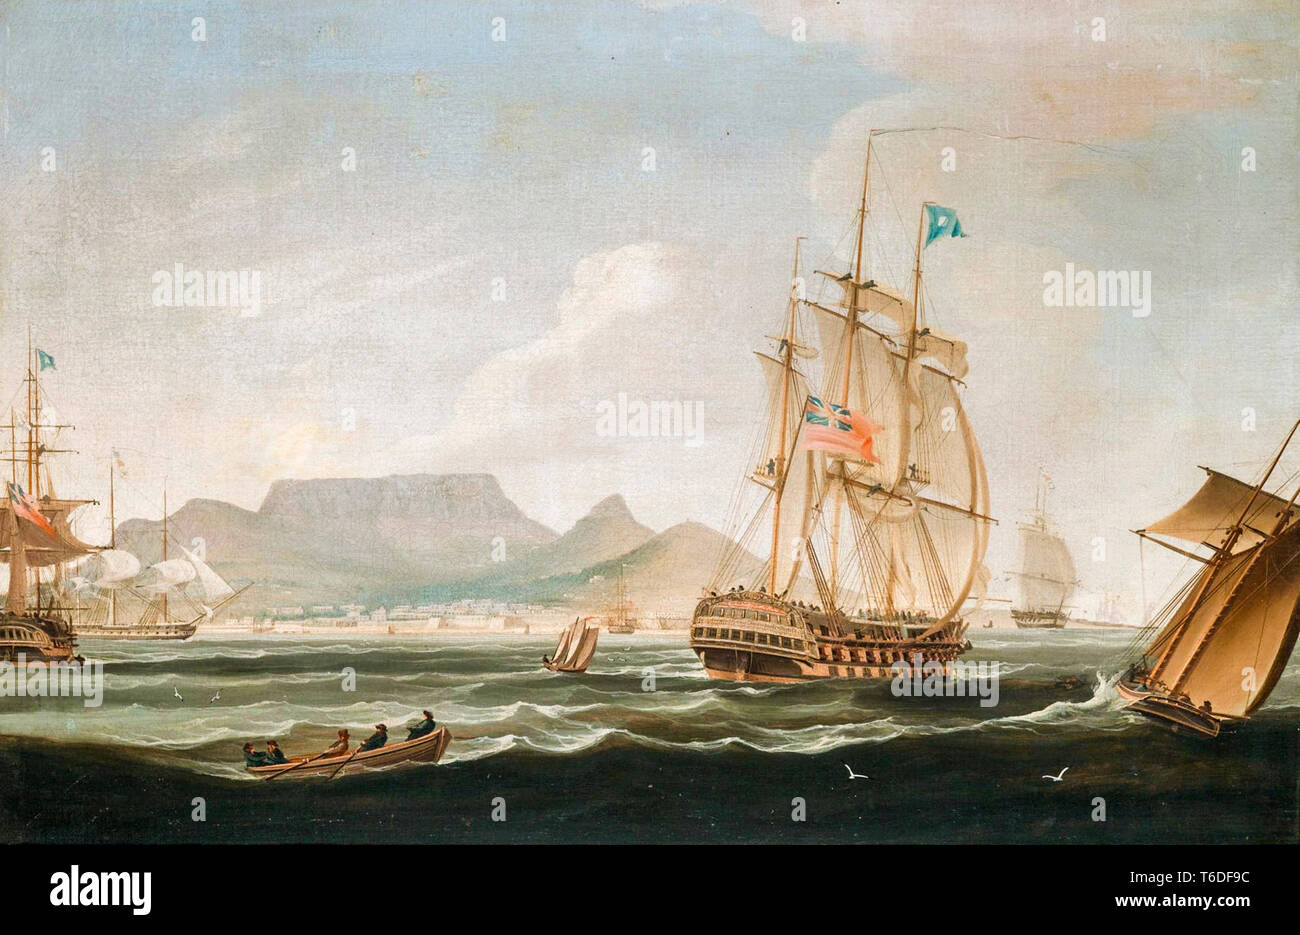 La Compagnie des Indes Lowther Castle, navire de la Table Bay, Cape Town, Afrique du Sud, peinture de William John Huggins, 1819 Banque D'Images